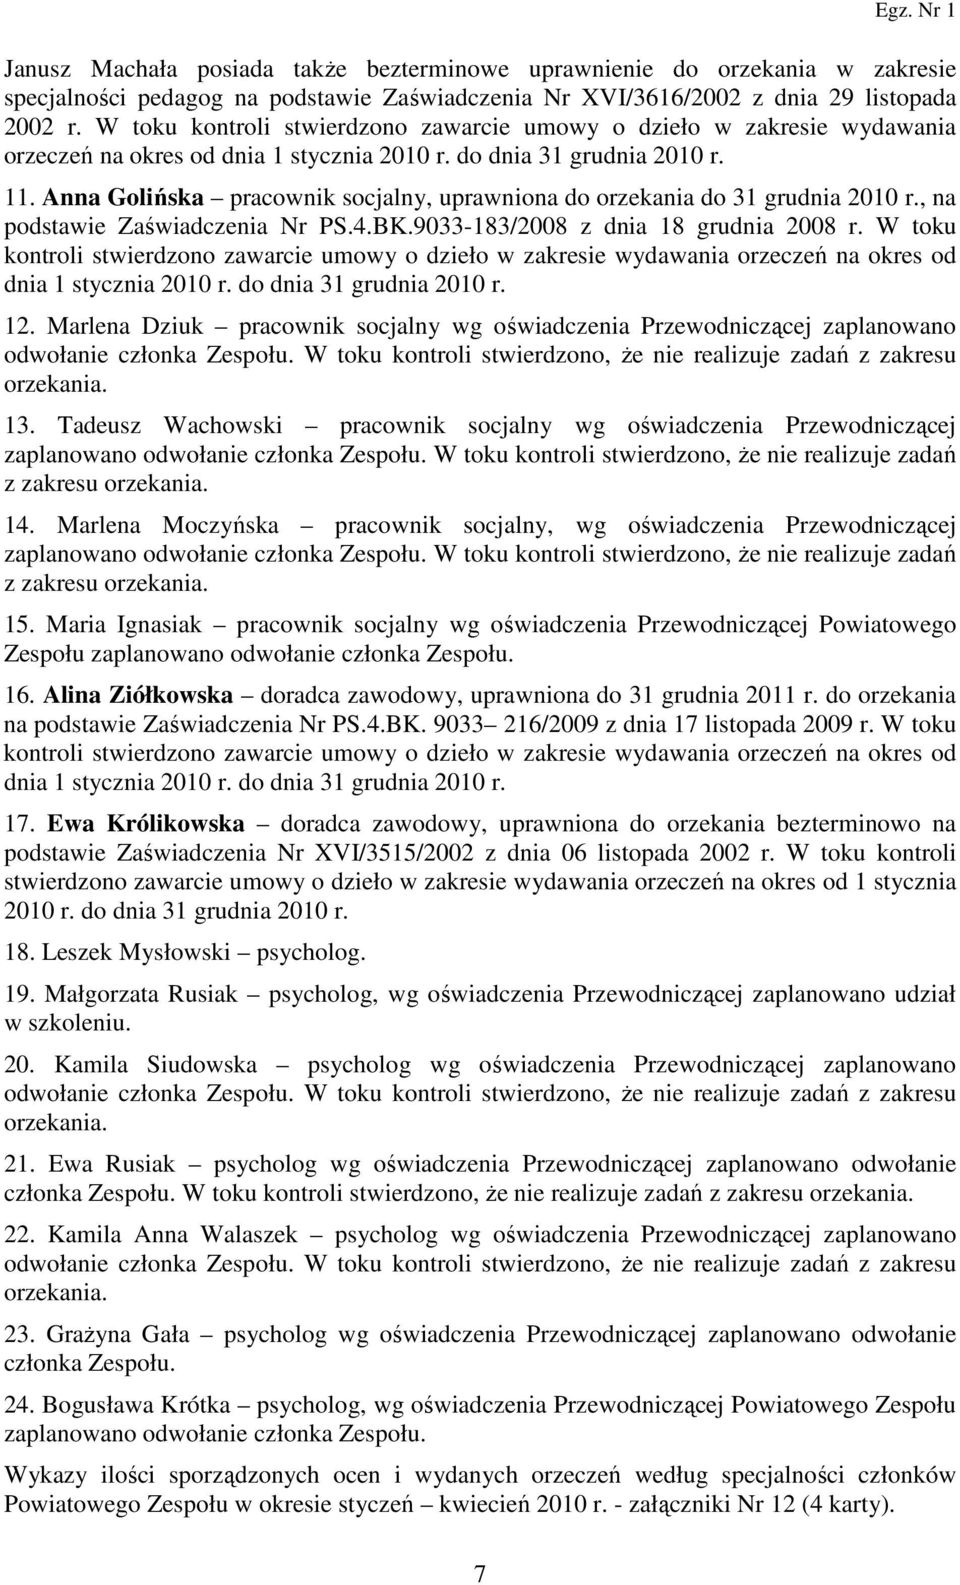 Anna Golińska pracownik socjalny, uprawniona do orzekania do 31 grudnia 2010 r., na podstawie Zaświadczenia Nr PS.4.BK.9033-183/2008 z dnia 18 grudnia 2008 r.